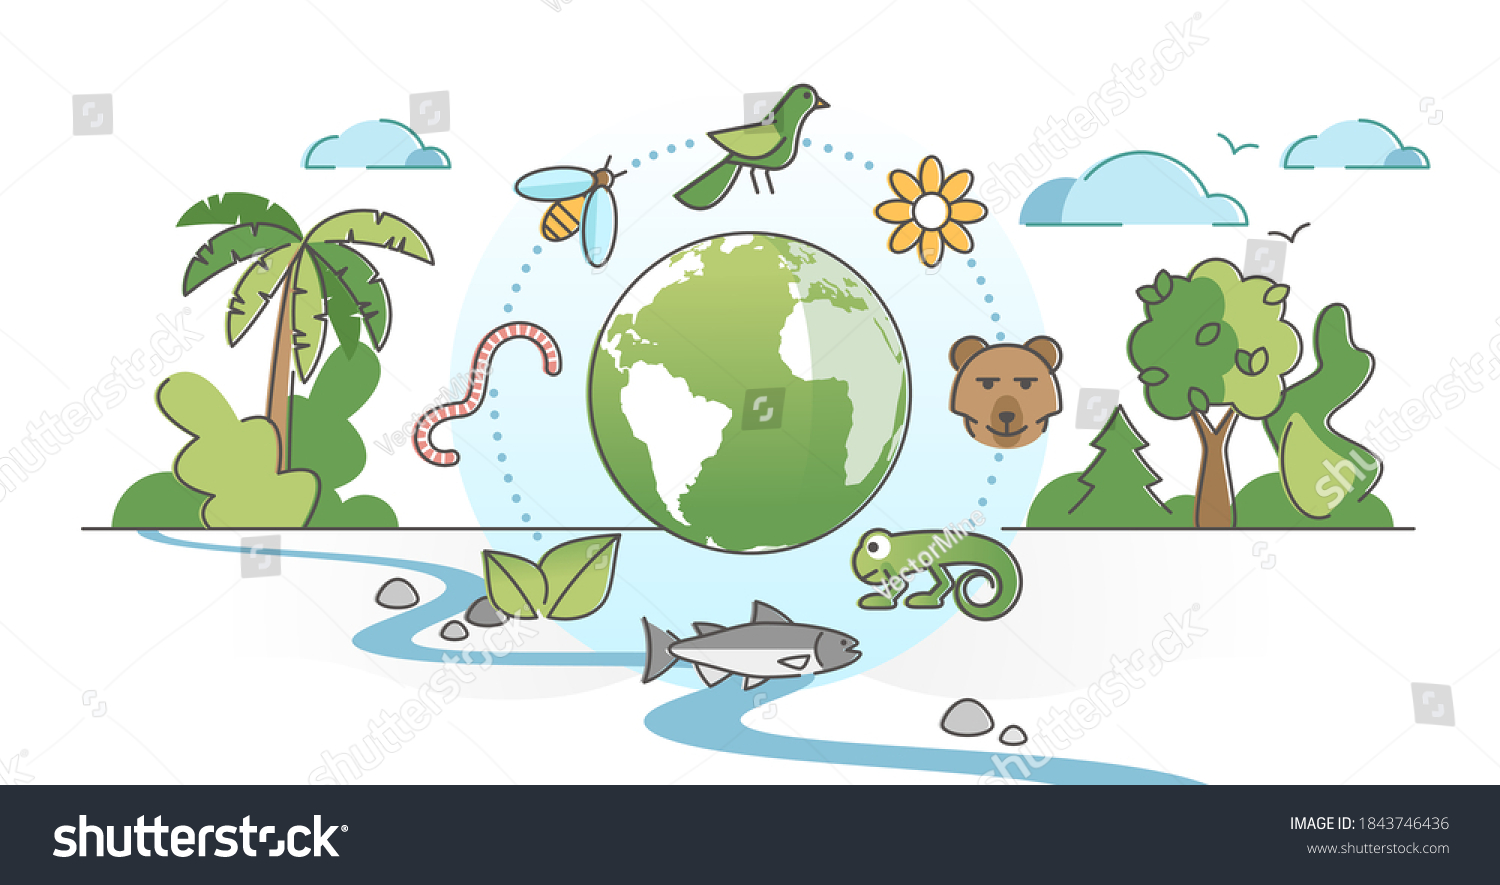 Рисунок на тему улучшение среды обитания для детей и подростков